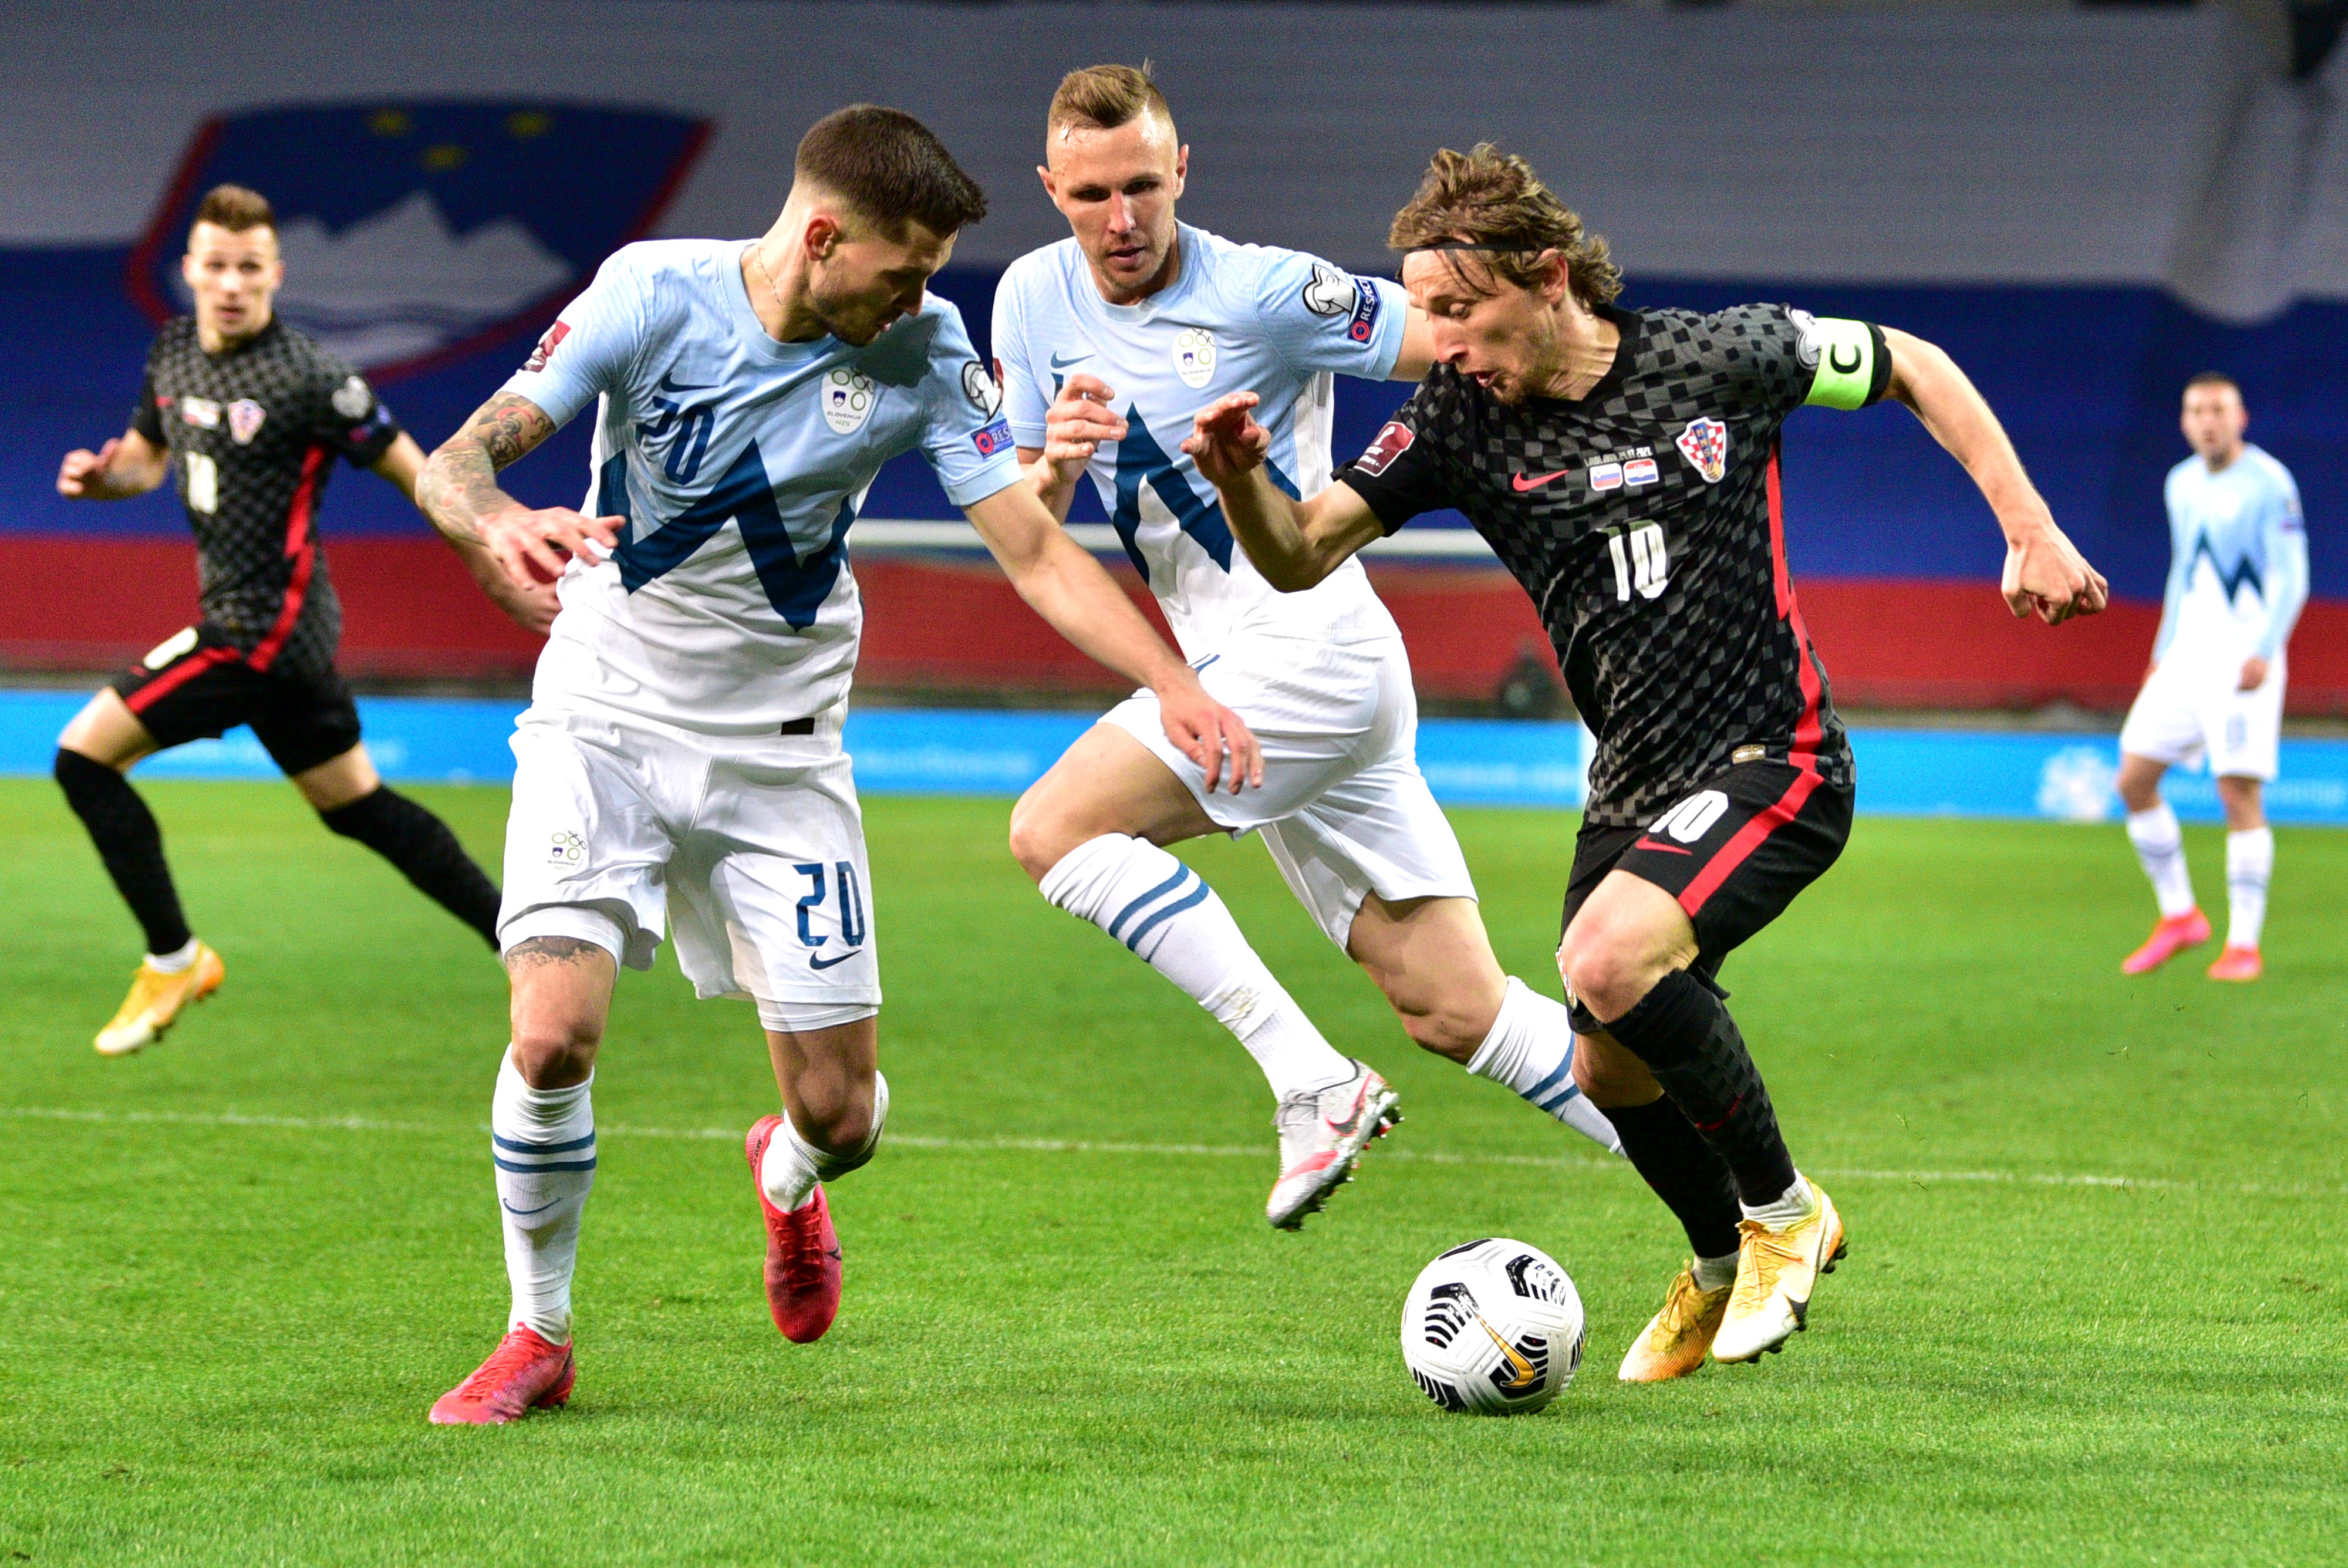 上届世界杯最佳球员莫德里奇（右），将领衔克罗地亚在小组次轮对阵塞浦路斯，图为他在上轮比赛被包夹。（欧新社照片）

